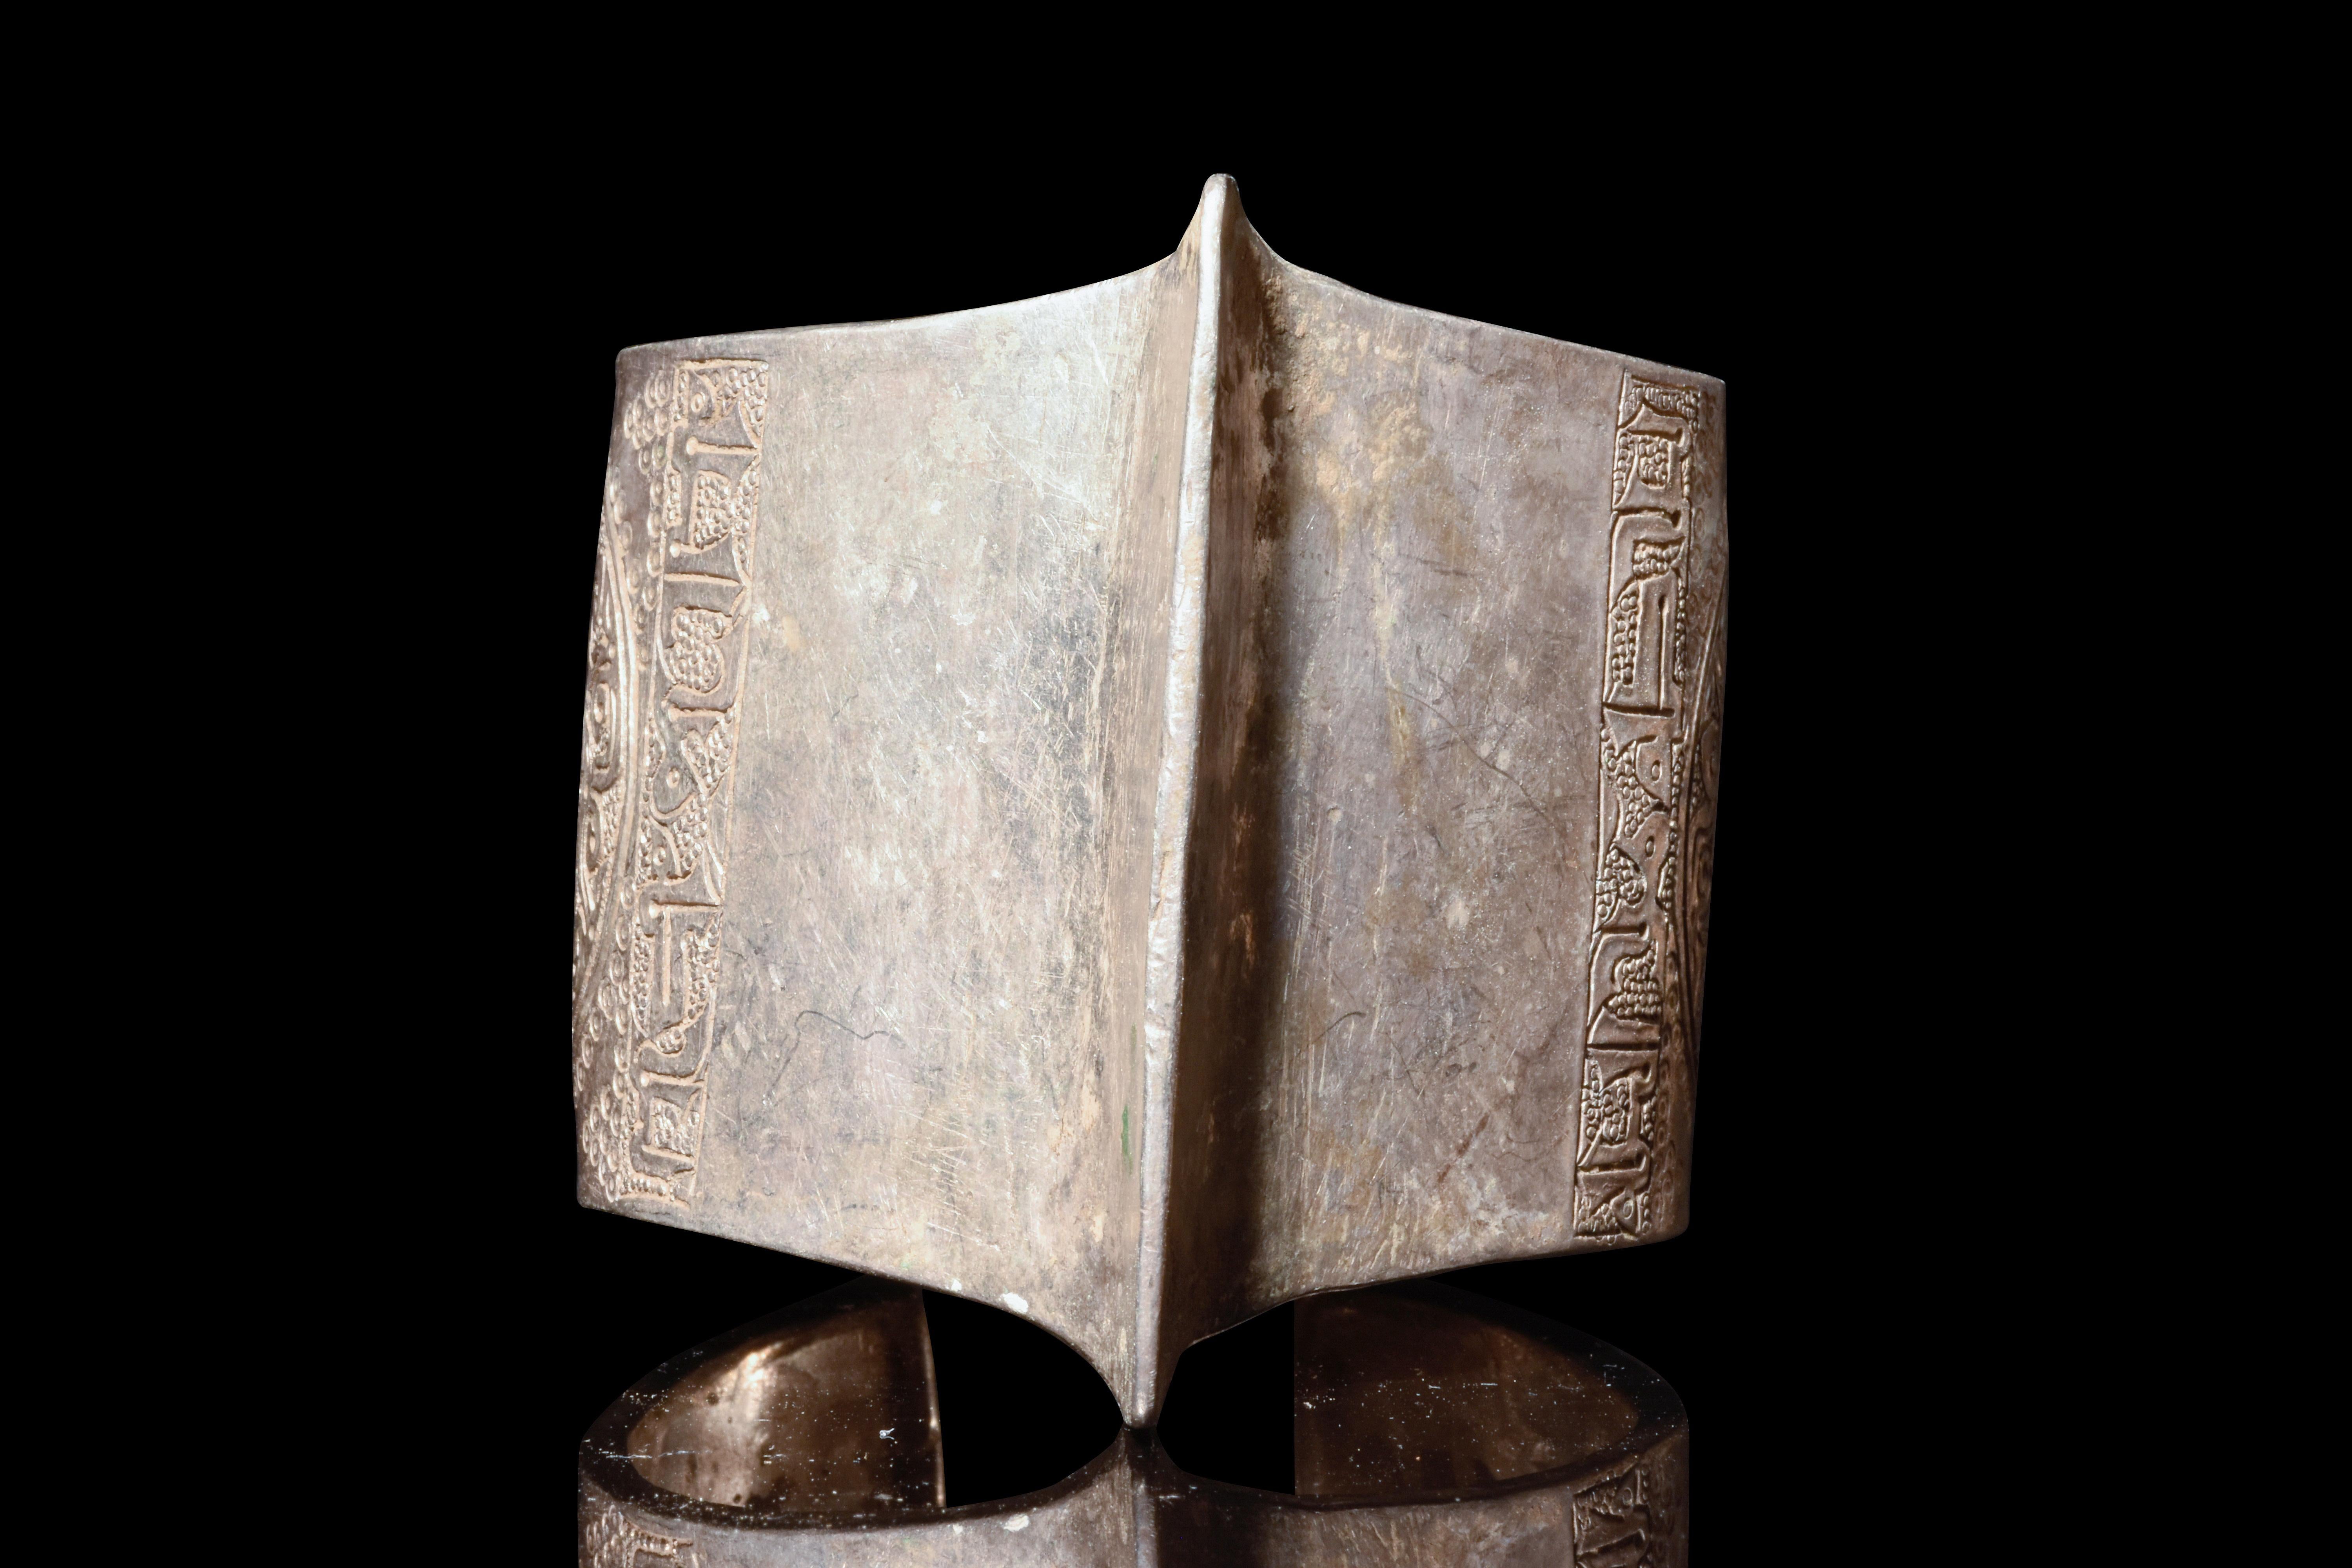 Ein silberner seldschukischer Penannular-Armreif mit einem Mittelgrat und runden Rosettenmustern. In der islamischen Kunst symbolisieren diese Muster die göttliche Schöpfung und die ewige Natur, wobei die Arabesken die Unendlichkeit und die